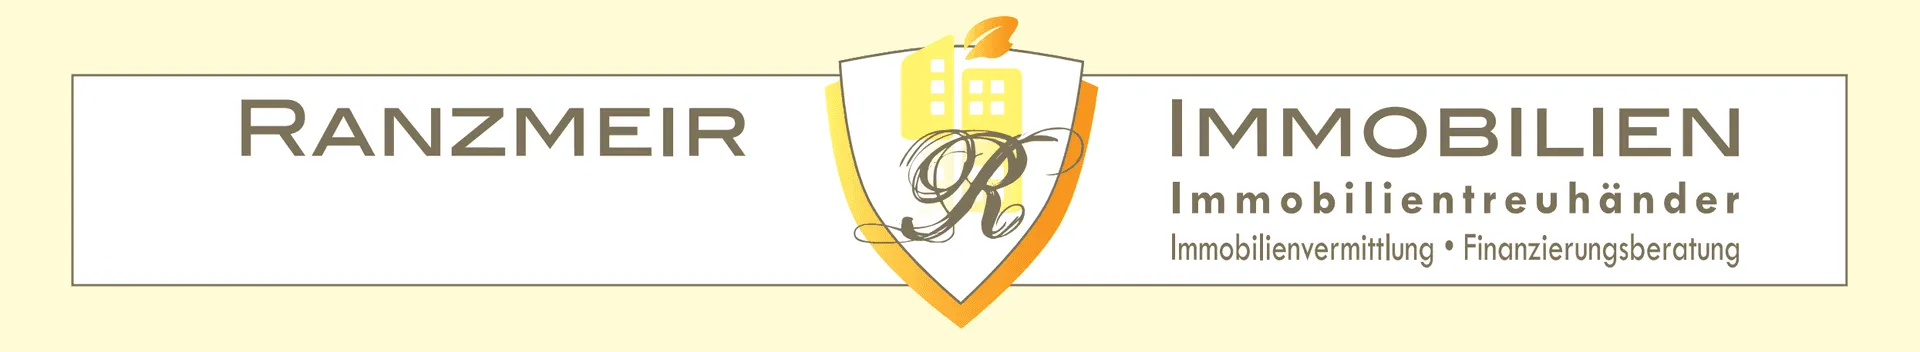 Makler RANZMEIR IMMOBILIEN logo